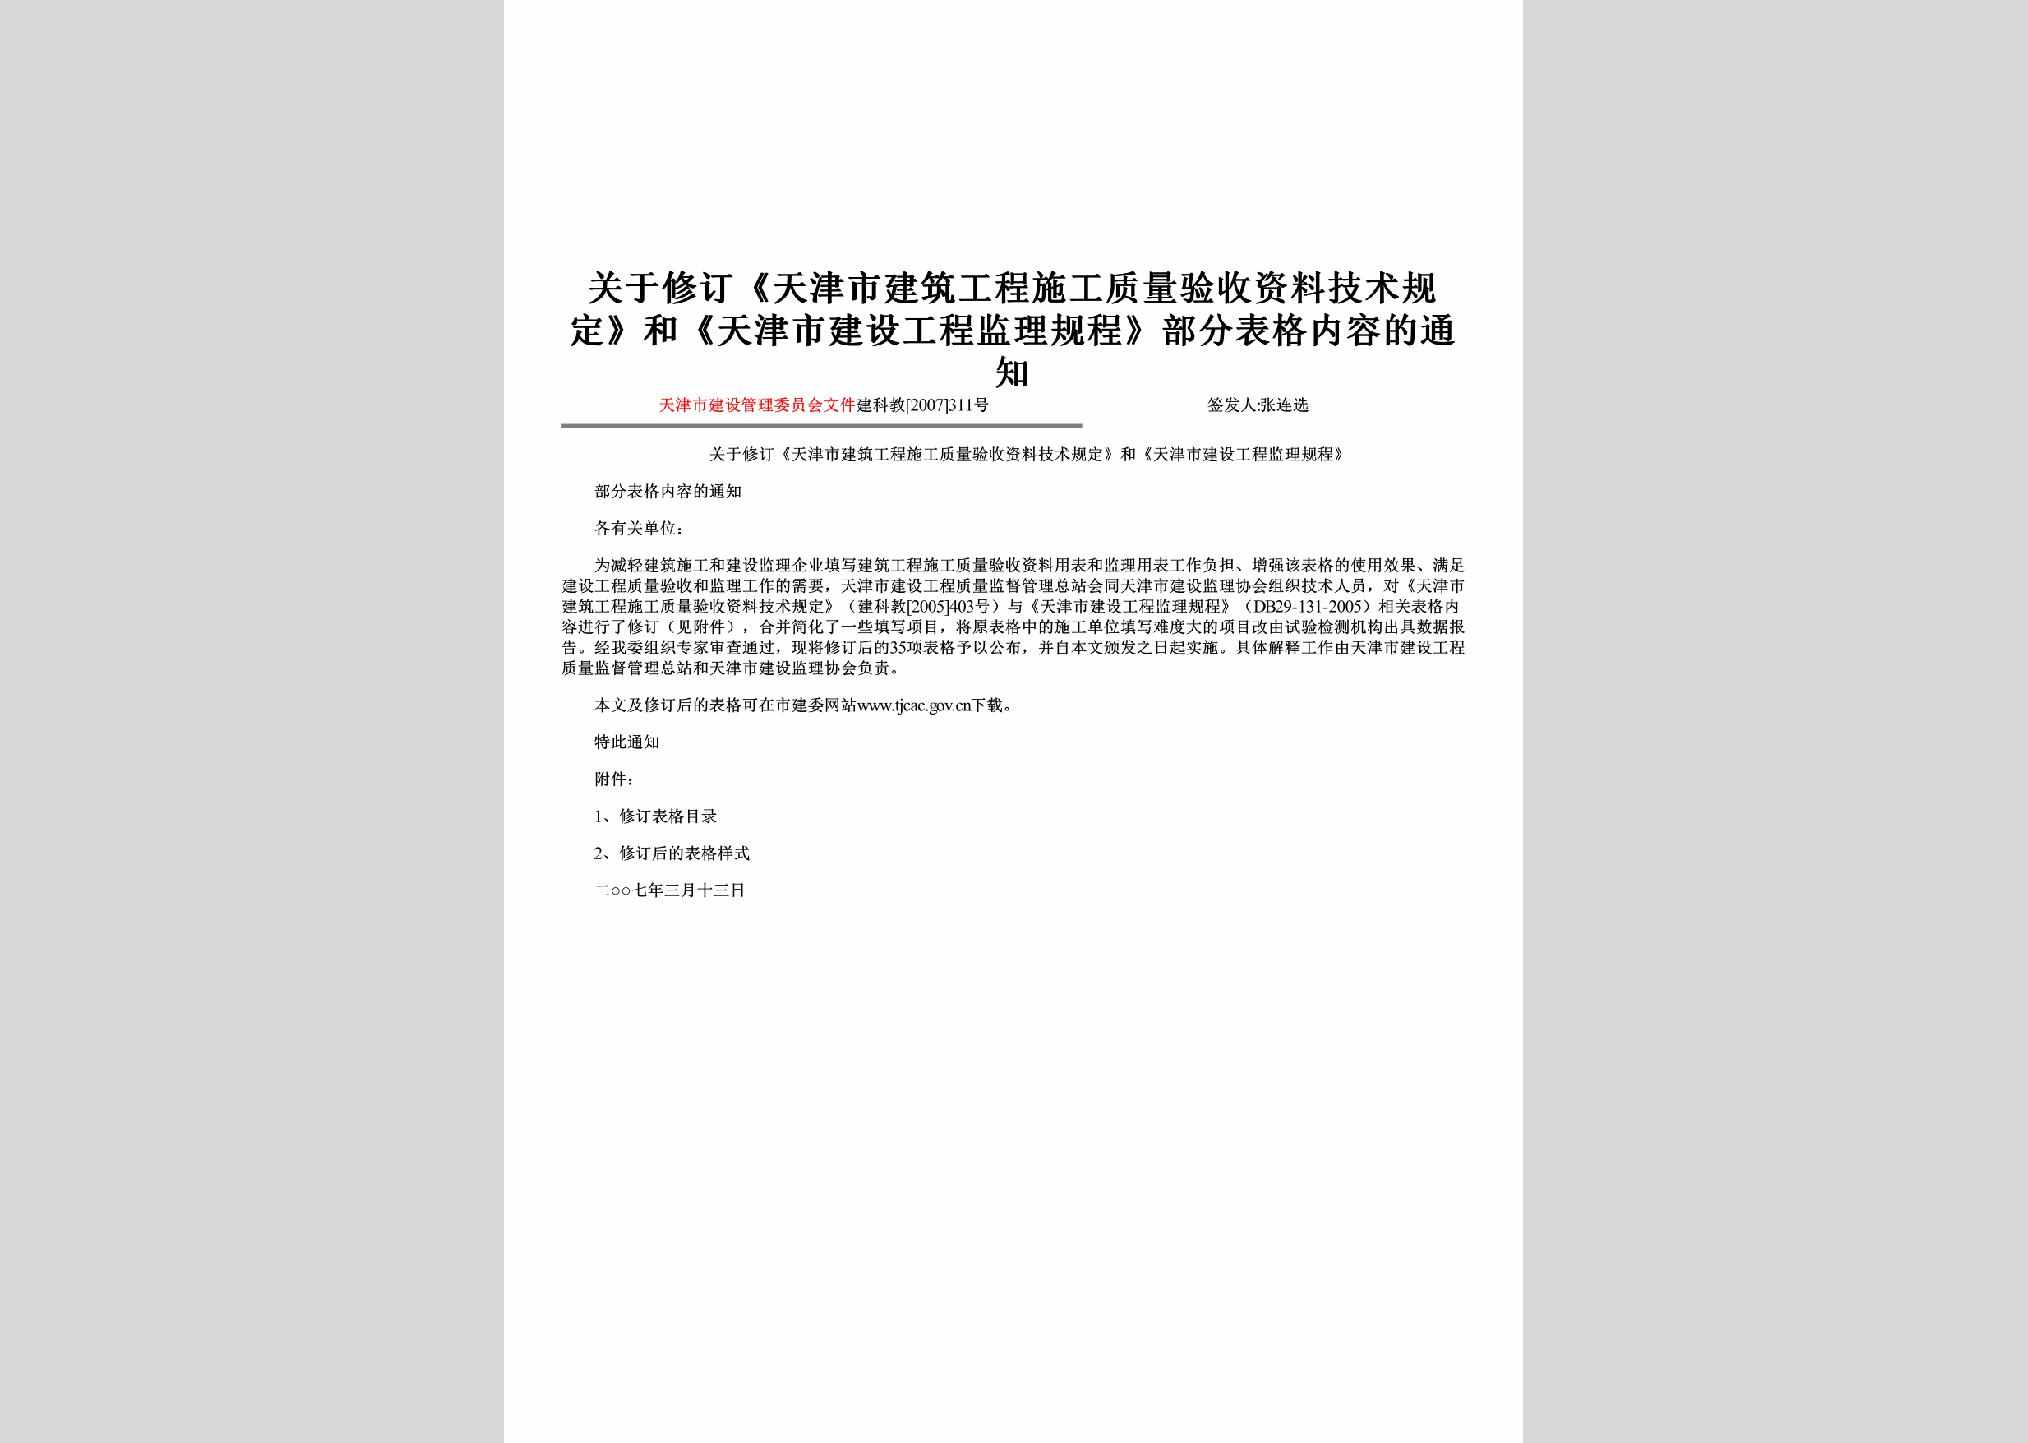 建科教[2007]311号：关于修订《天津市建筑工程施工质量验收资料技术规定》和《天津市建设工程监理规程》部分表格内容的通知